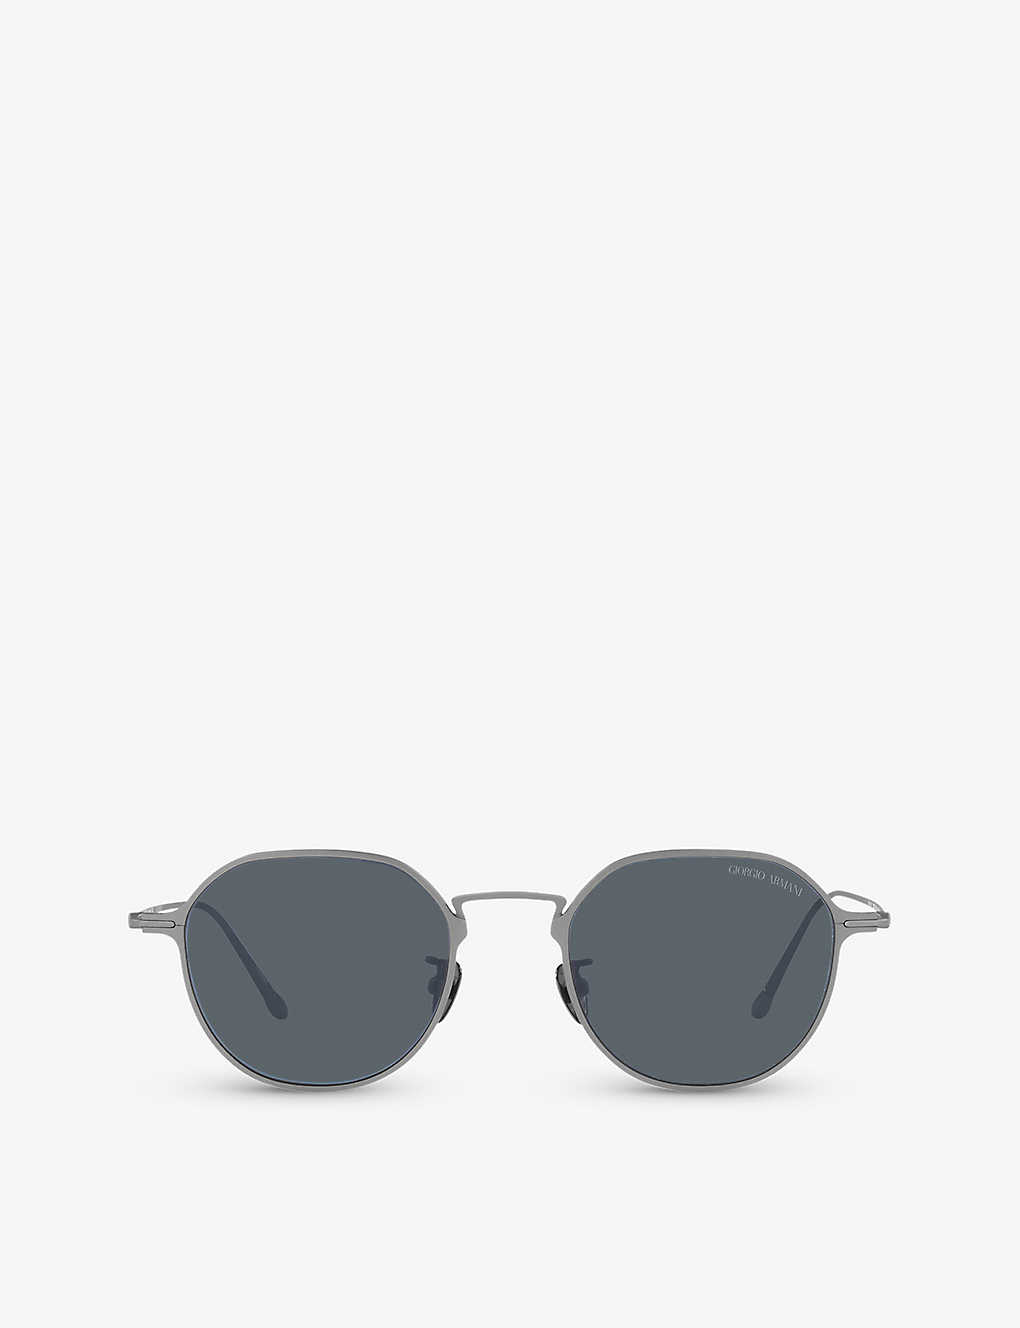 Giorgio Armani Sunglasses In Silver